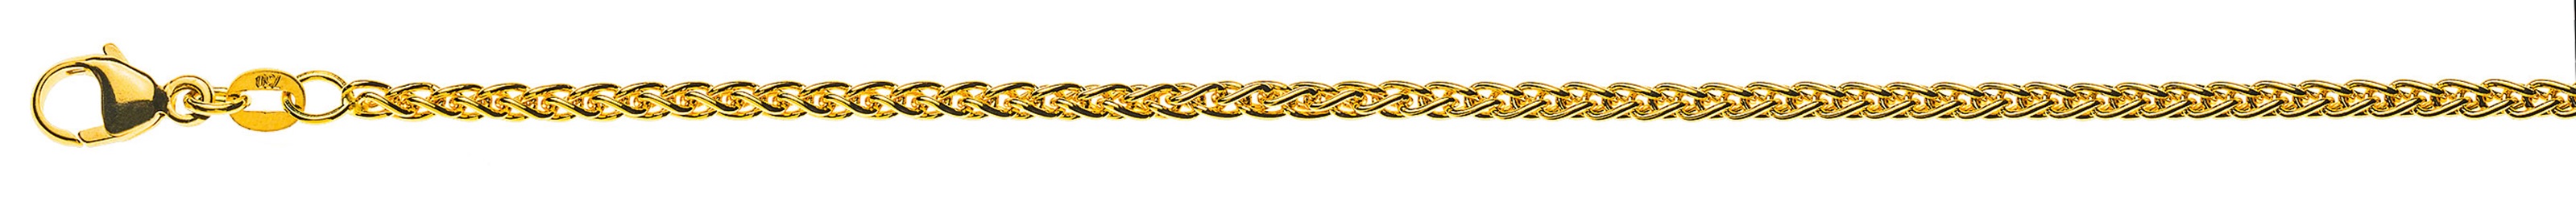 AURONOS Prestige Halskette Gelbgold 18K Zopfkette 55cm 2.5mm